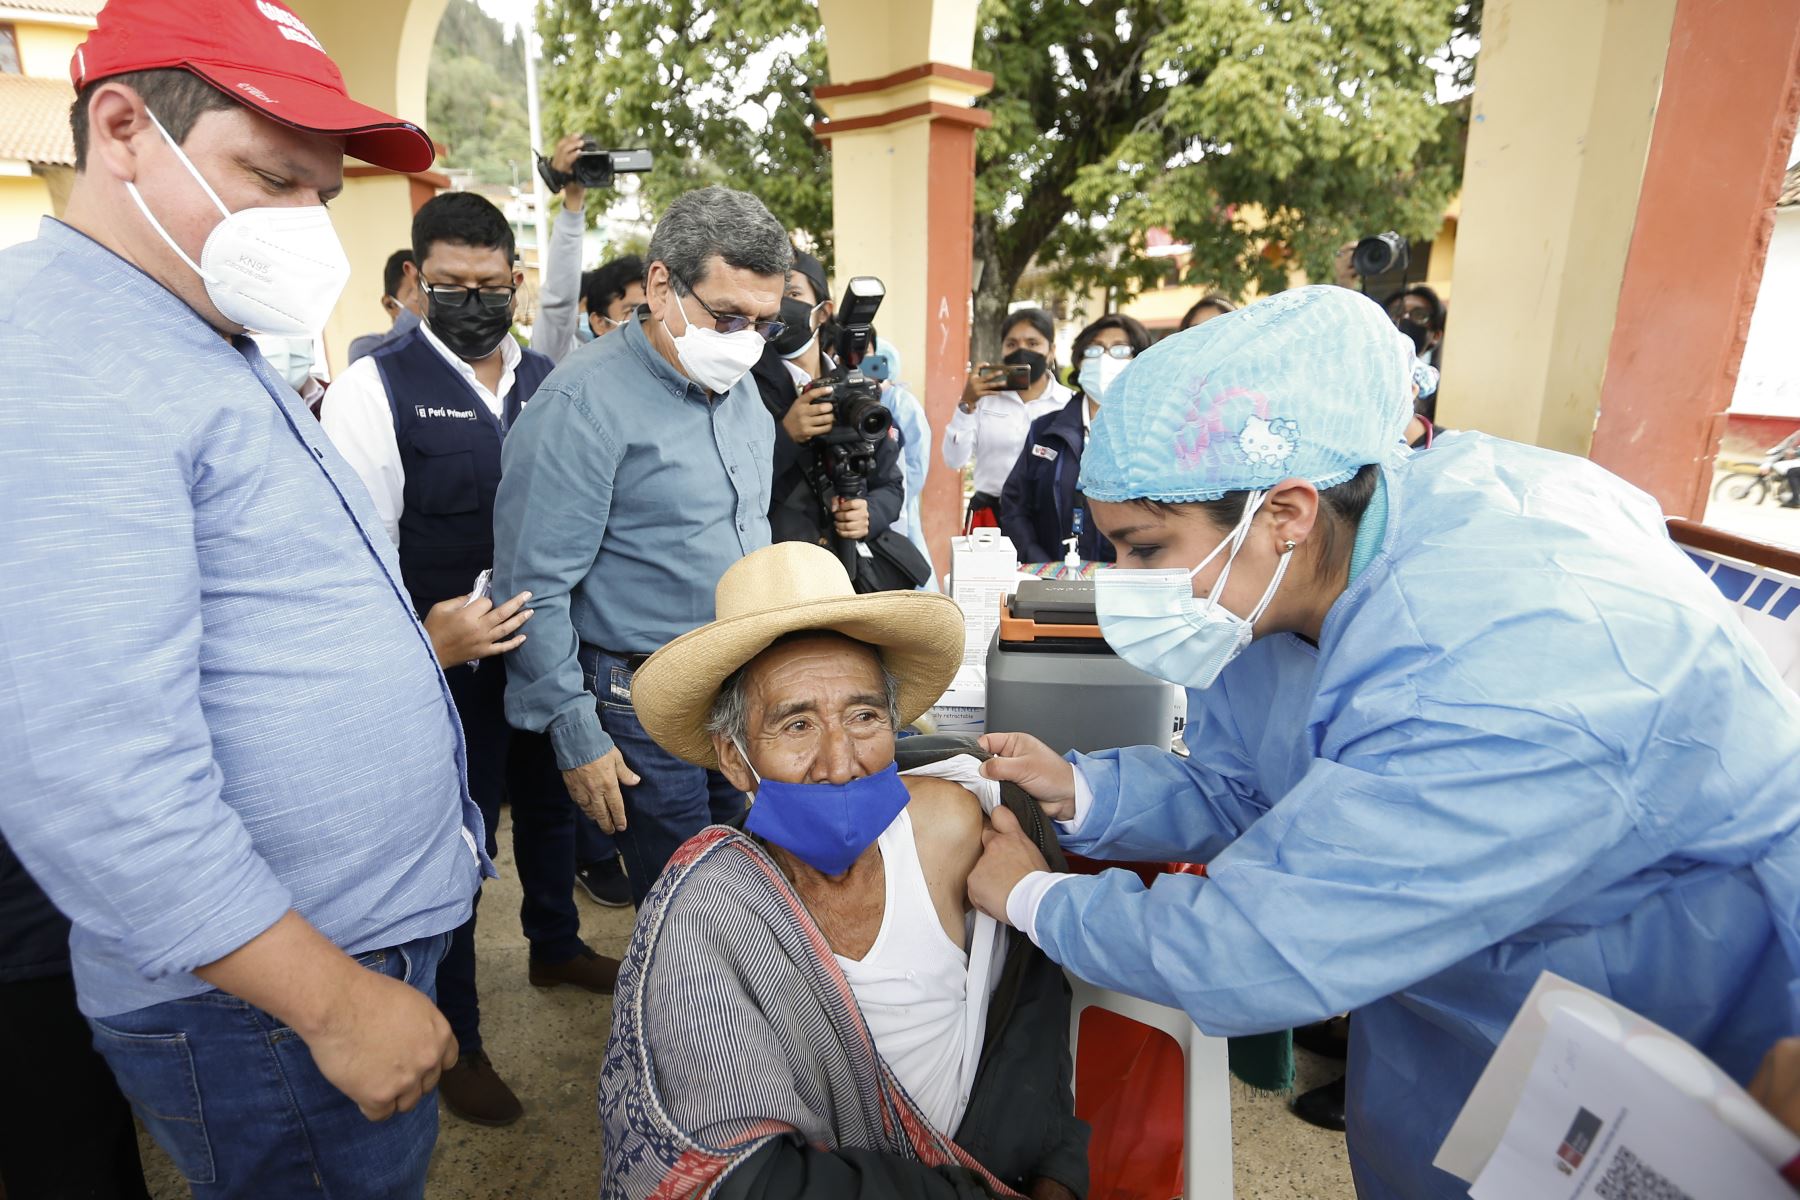 El ministro de Salud, Hernando Cevallos, supervisa vacunación contra la covid-19 y los avances de obra del hospital de Ayabaca, Piura. Foto: Minsa